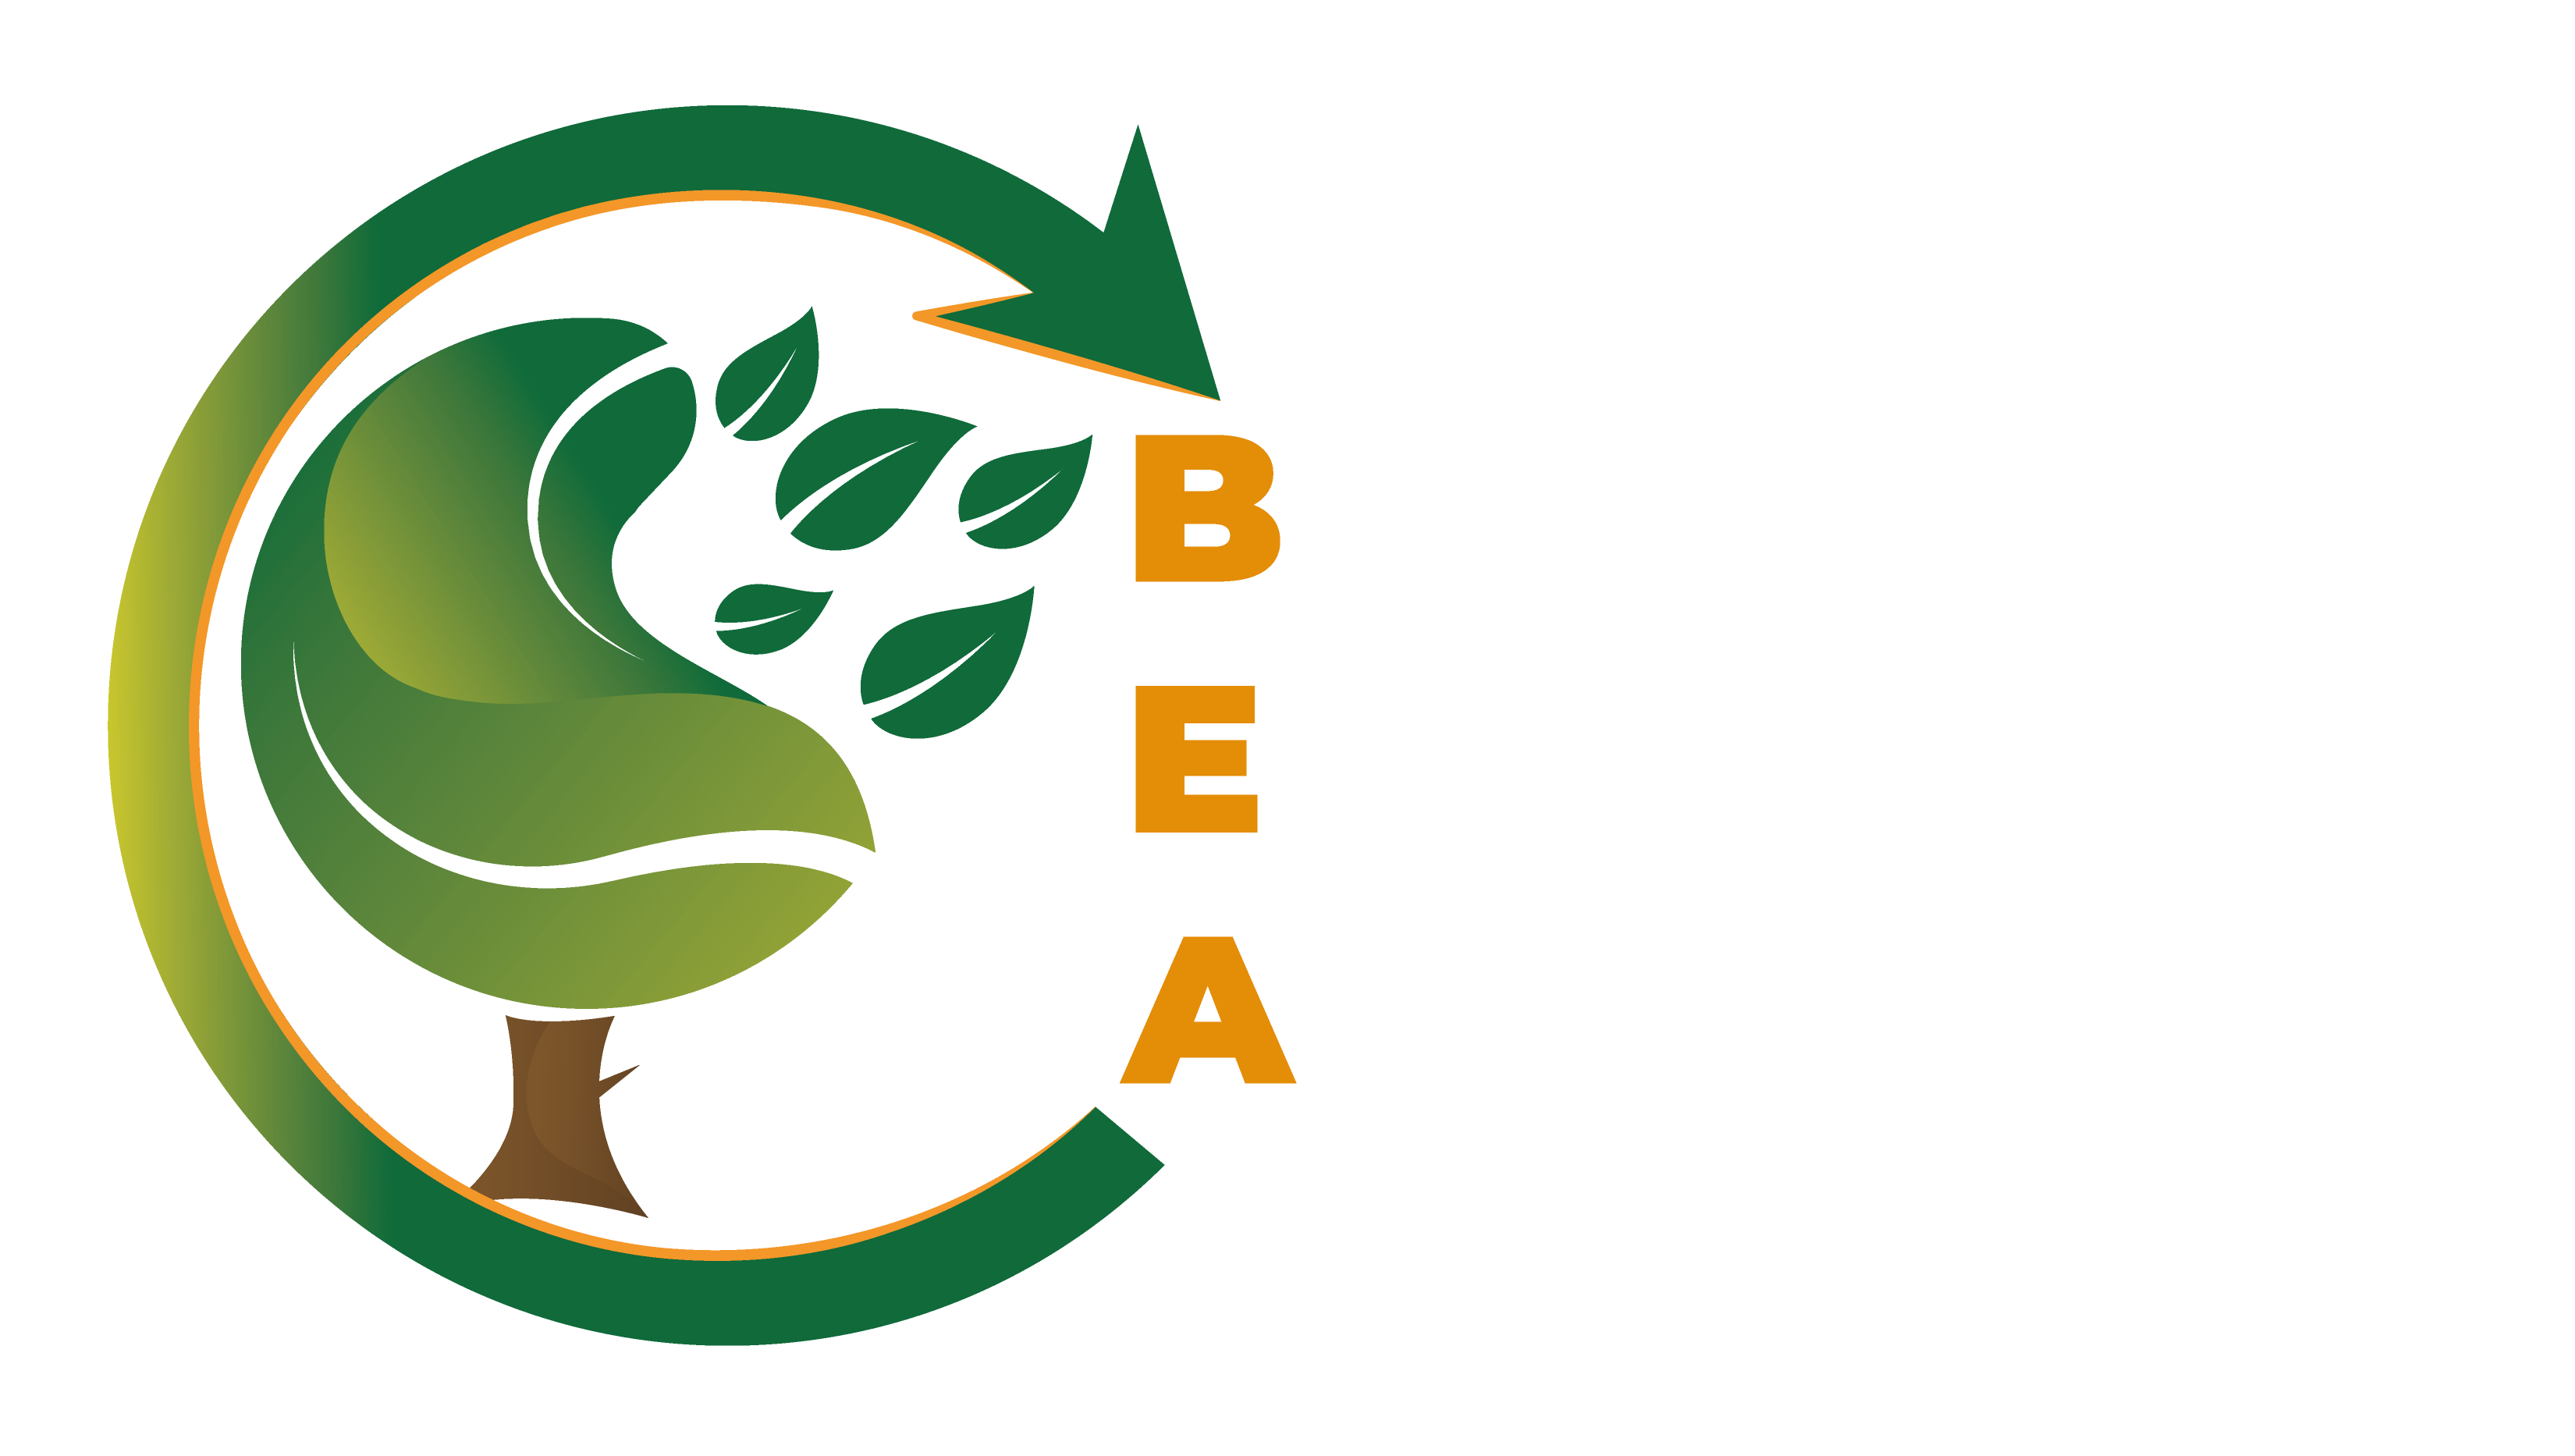 Bio Extractos Andinos